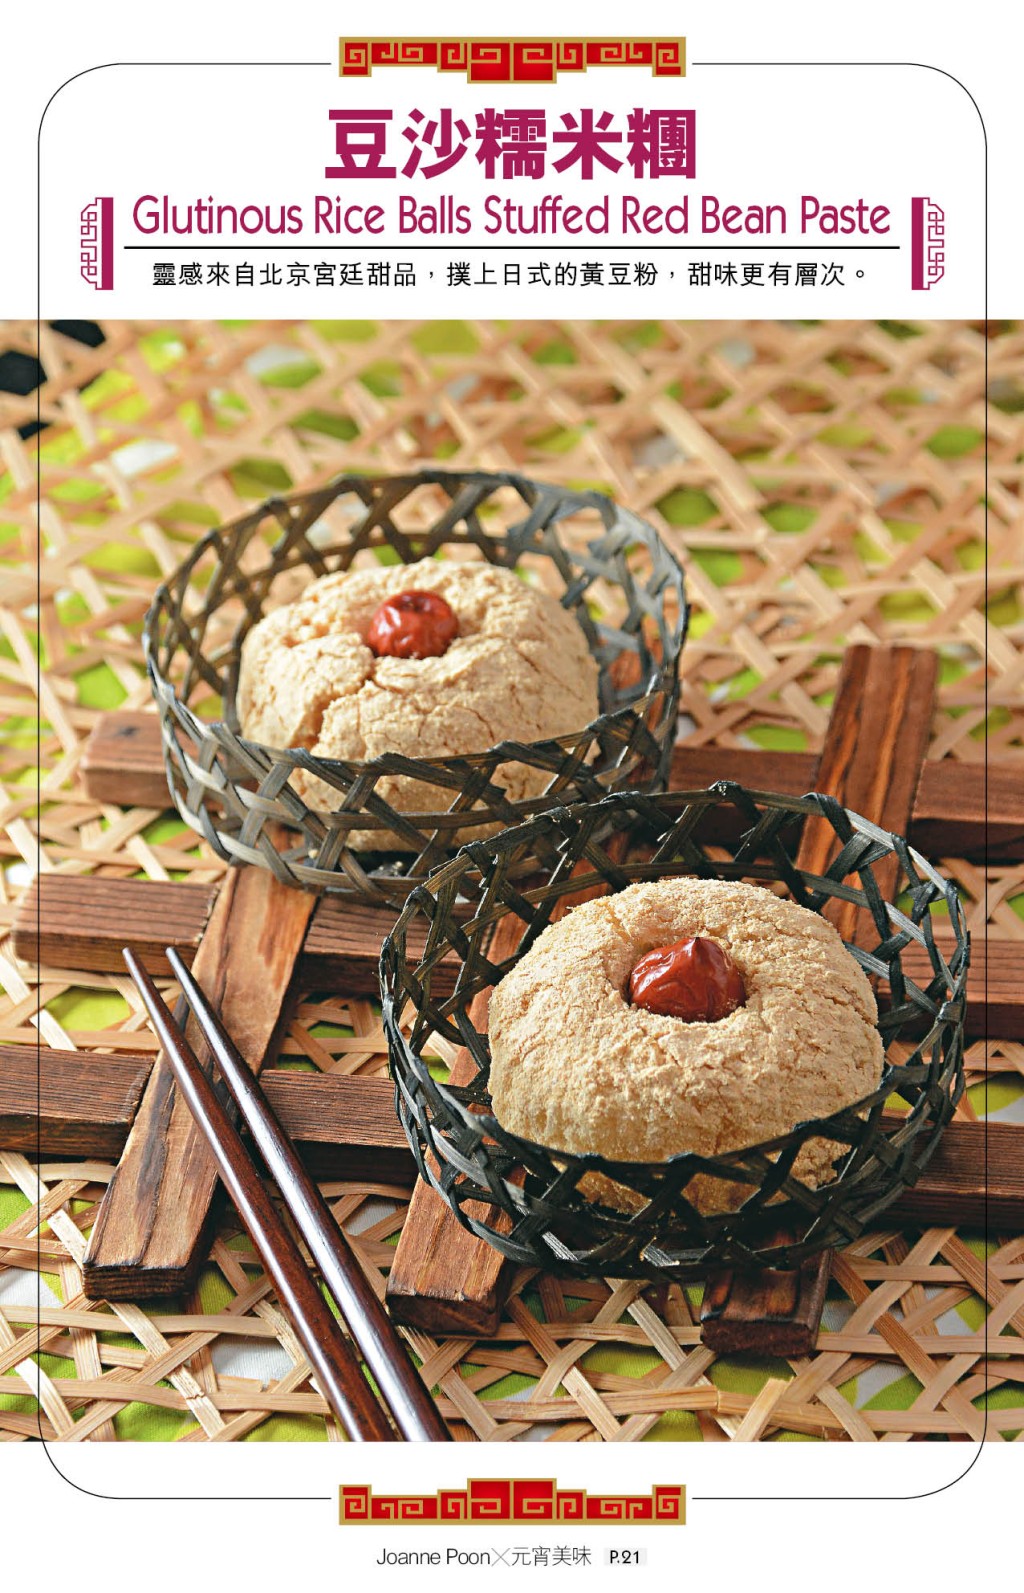 元宵节甜品——豆沙糯米团